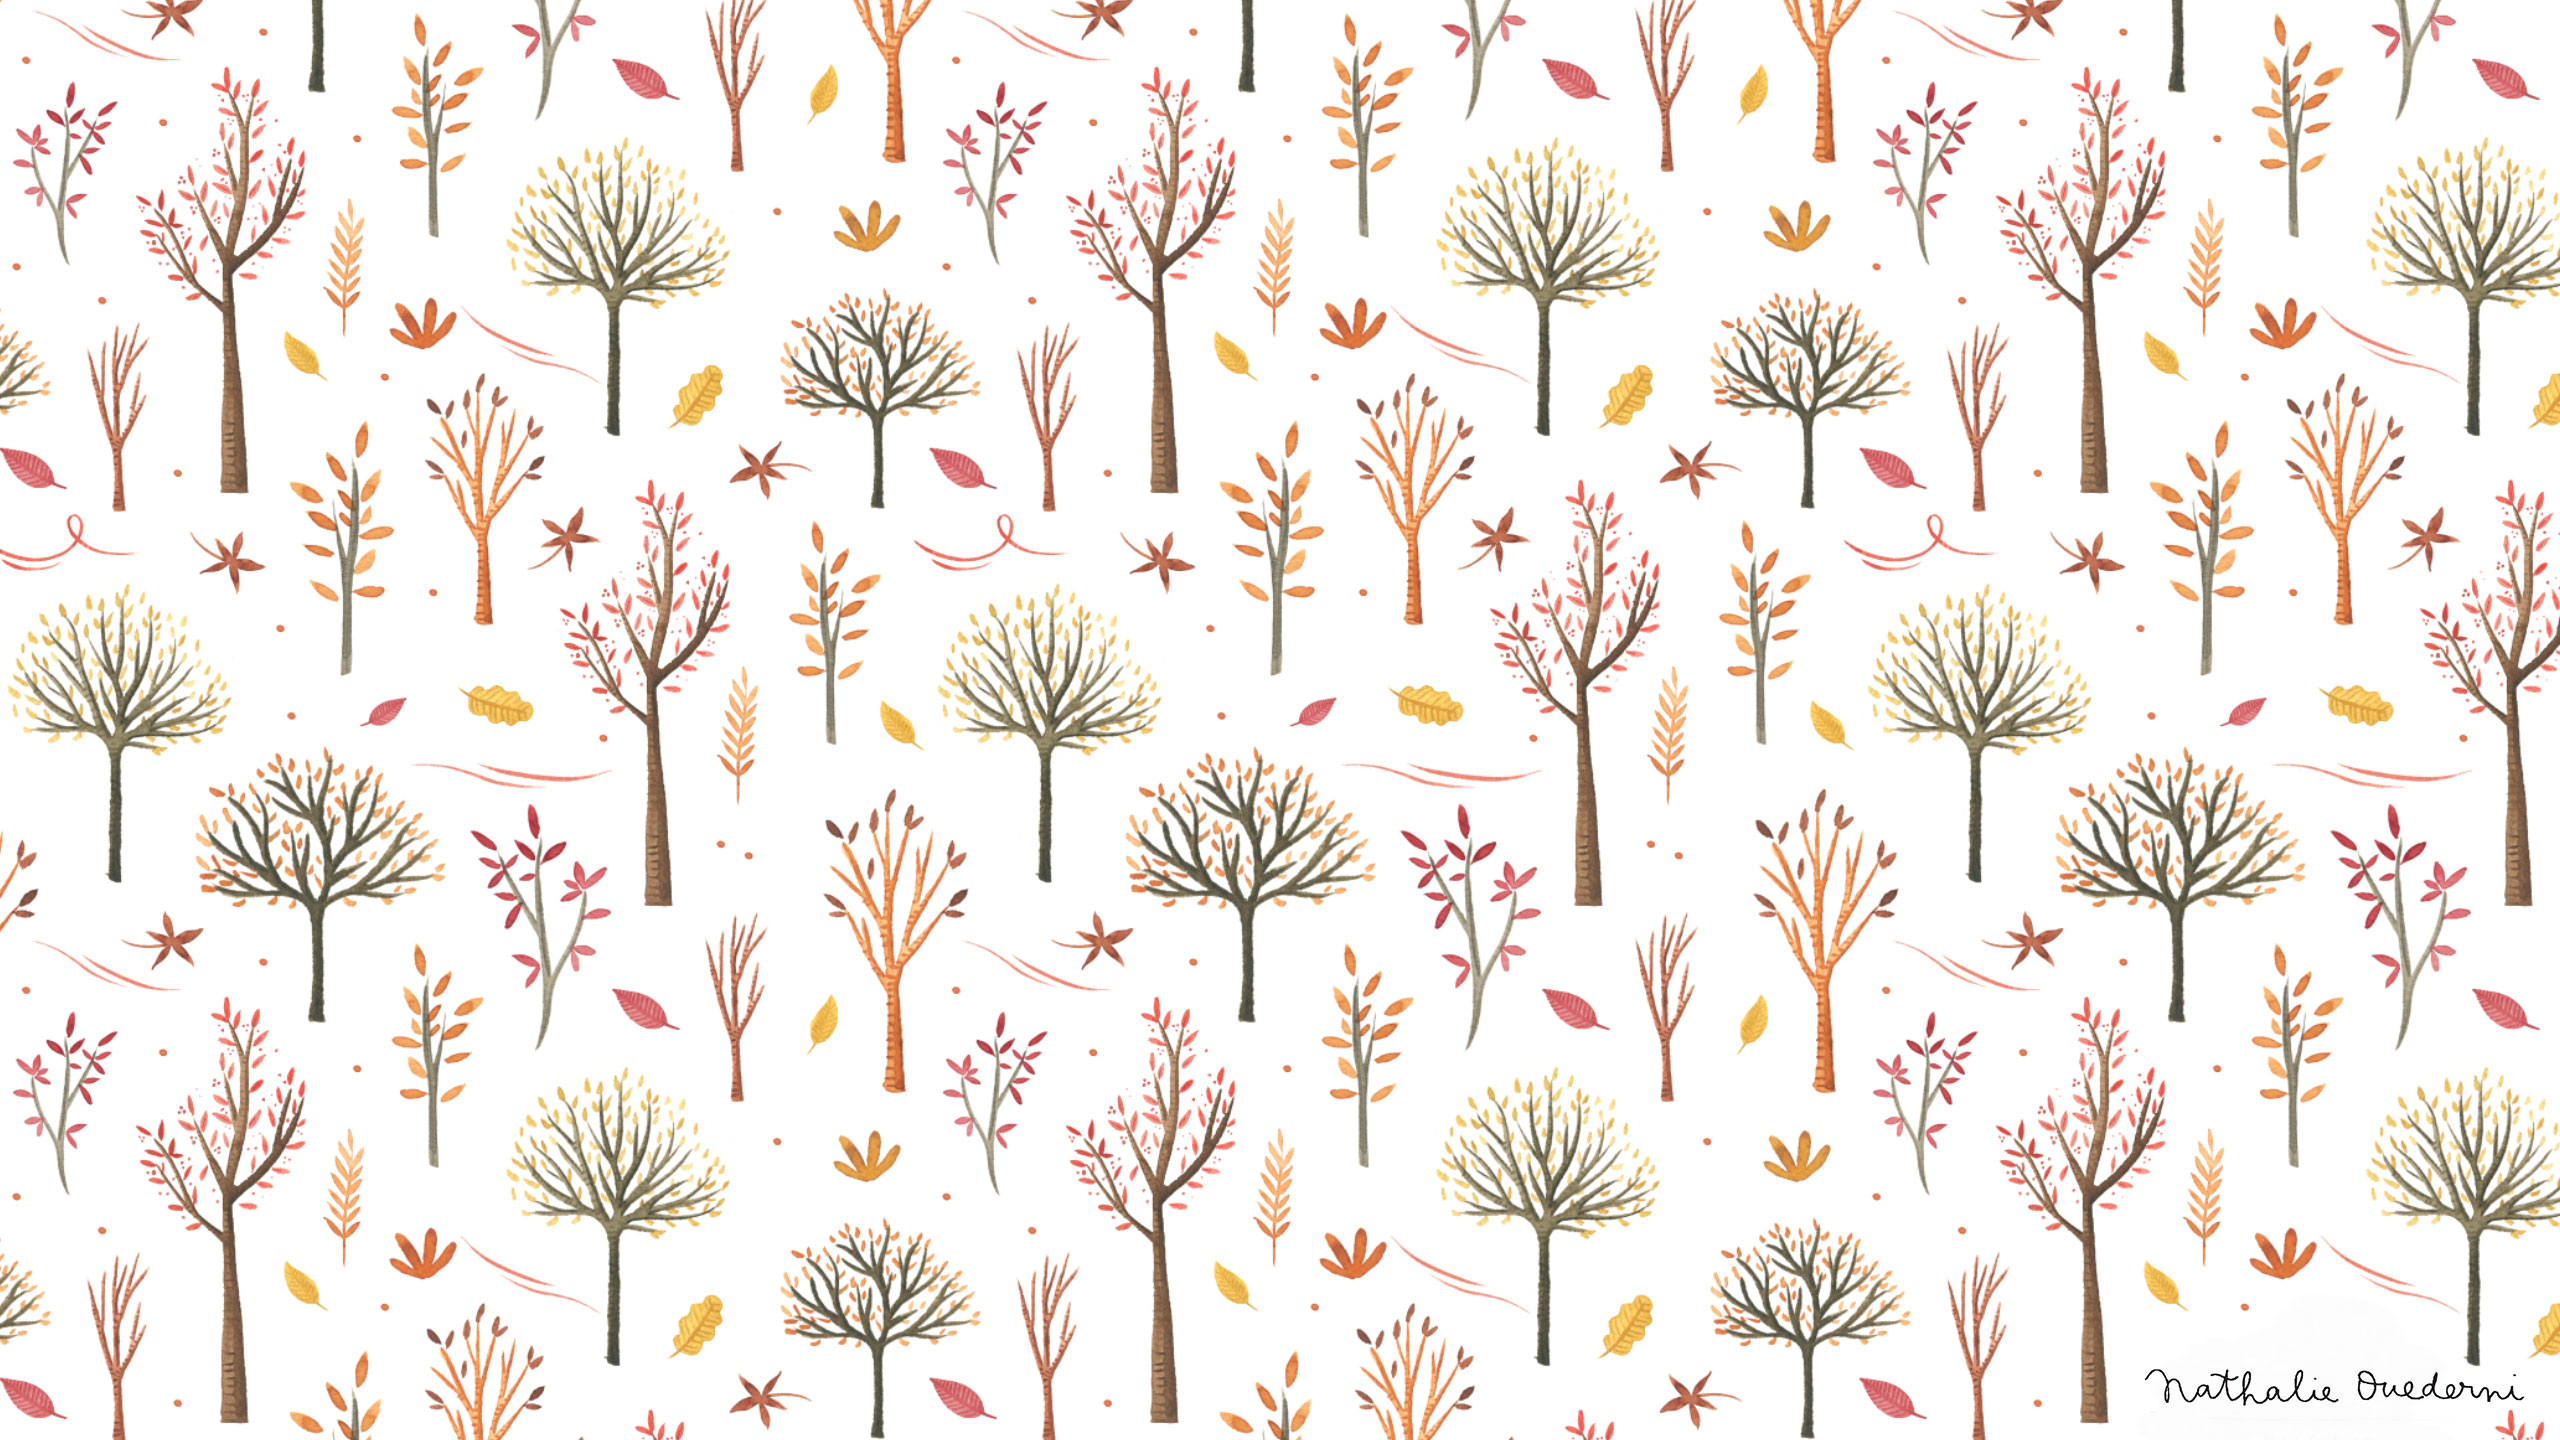 October free Desktop wallpaper — Nathalie Ouederni - Watercolor  Illustration & Pattern design